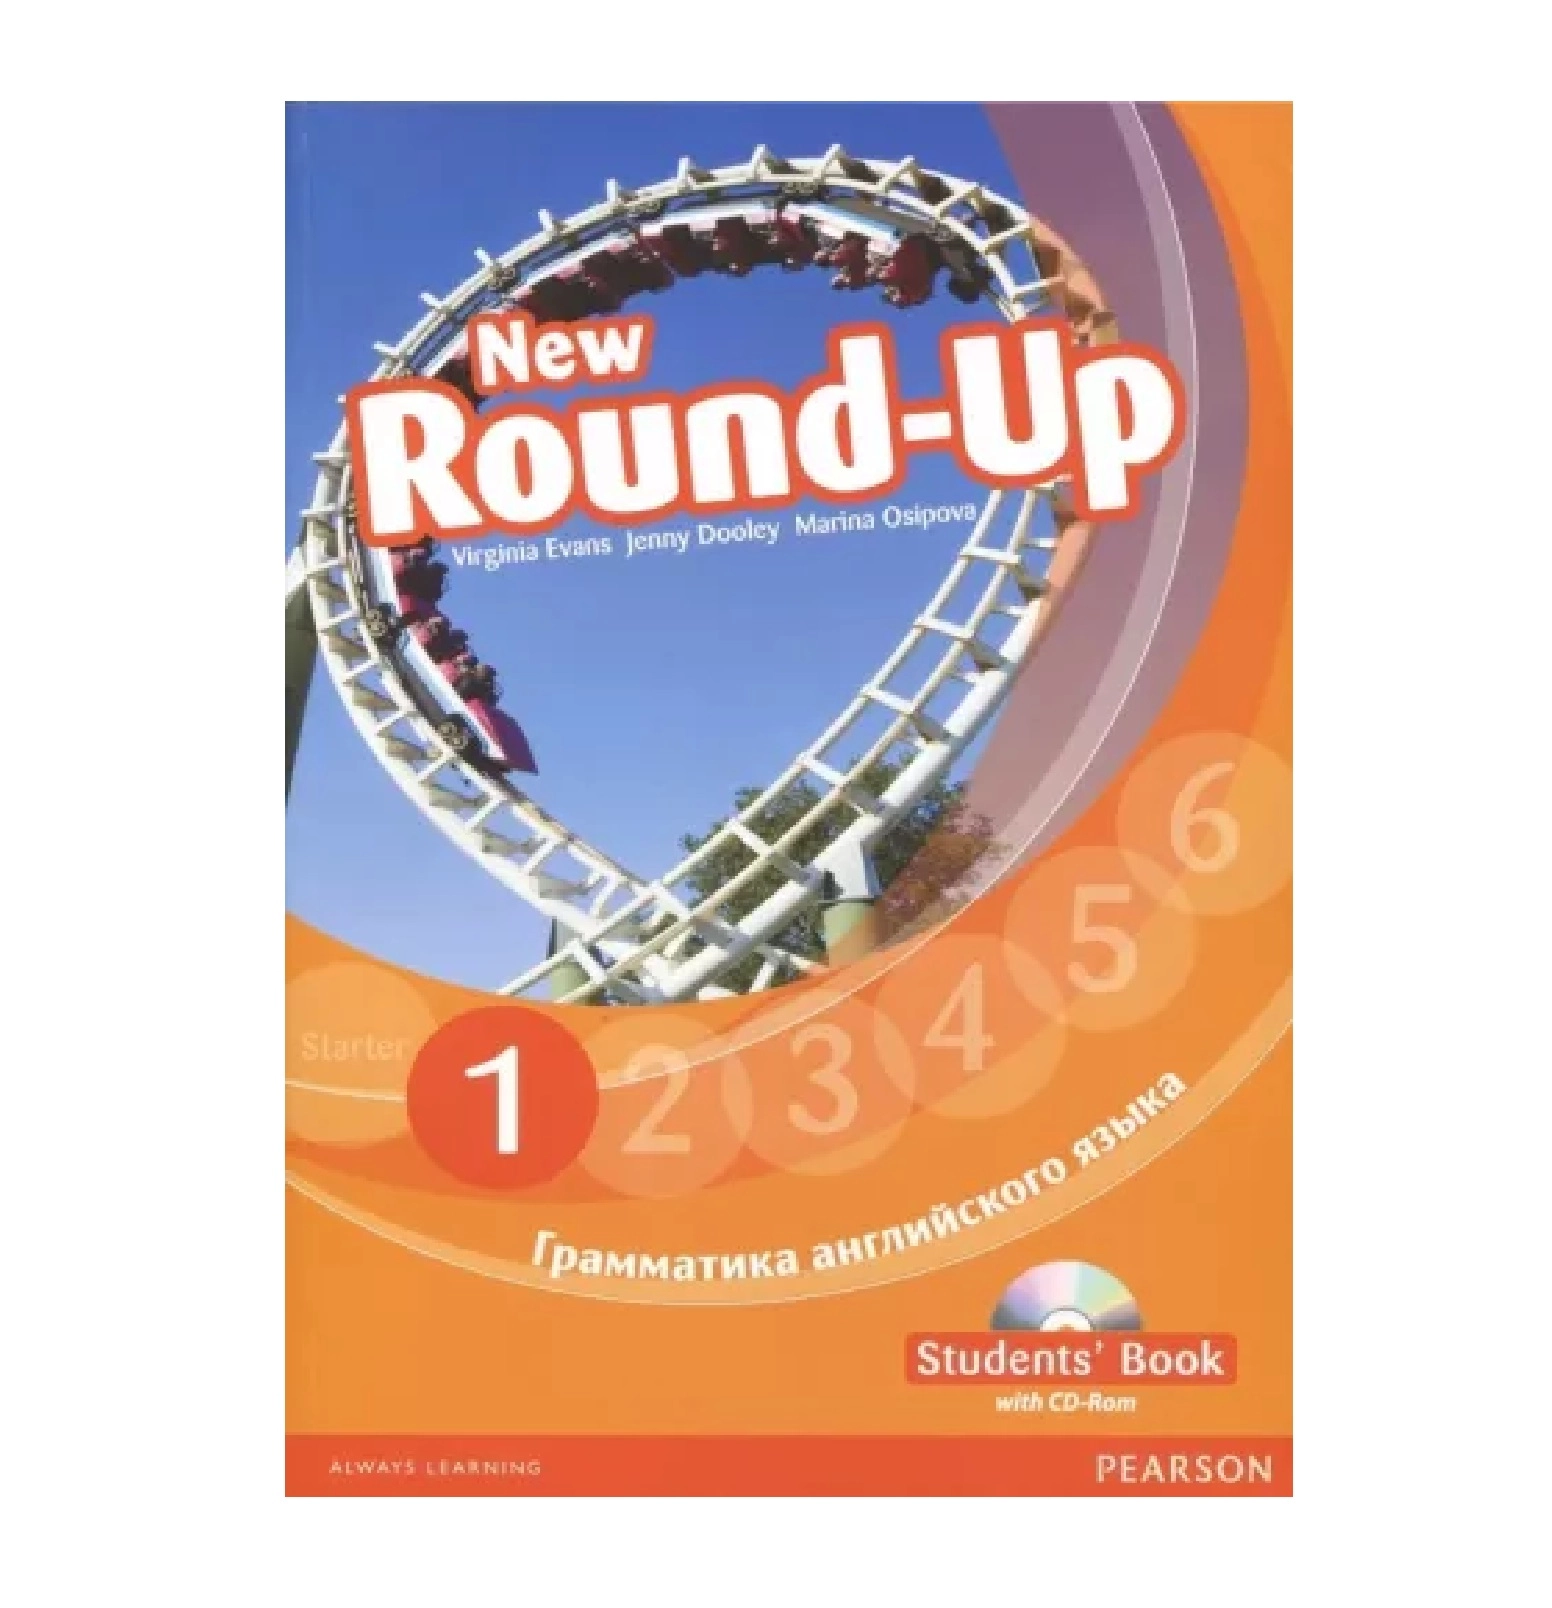 Round up 6 teachers book. Round up 1 Virginia Evans. Английский New Round up Starter. Round up 1 students book грамматика английского языка. New Round up 6.